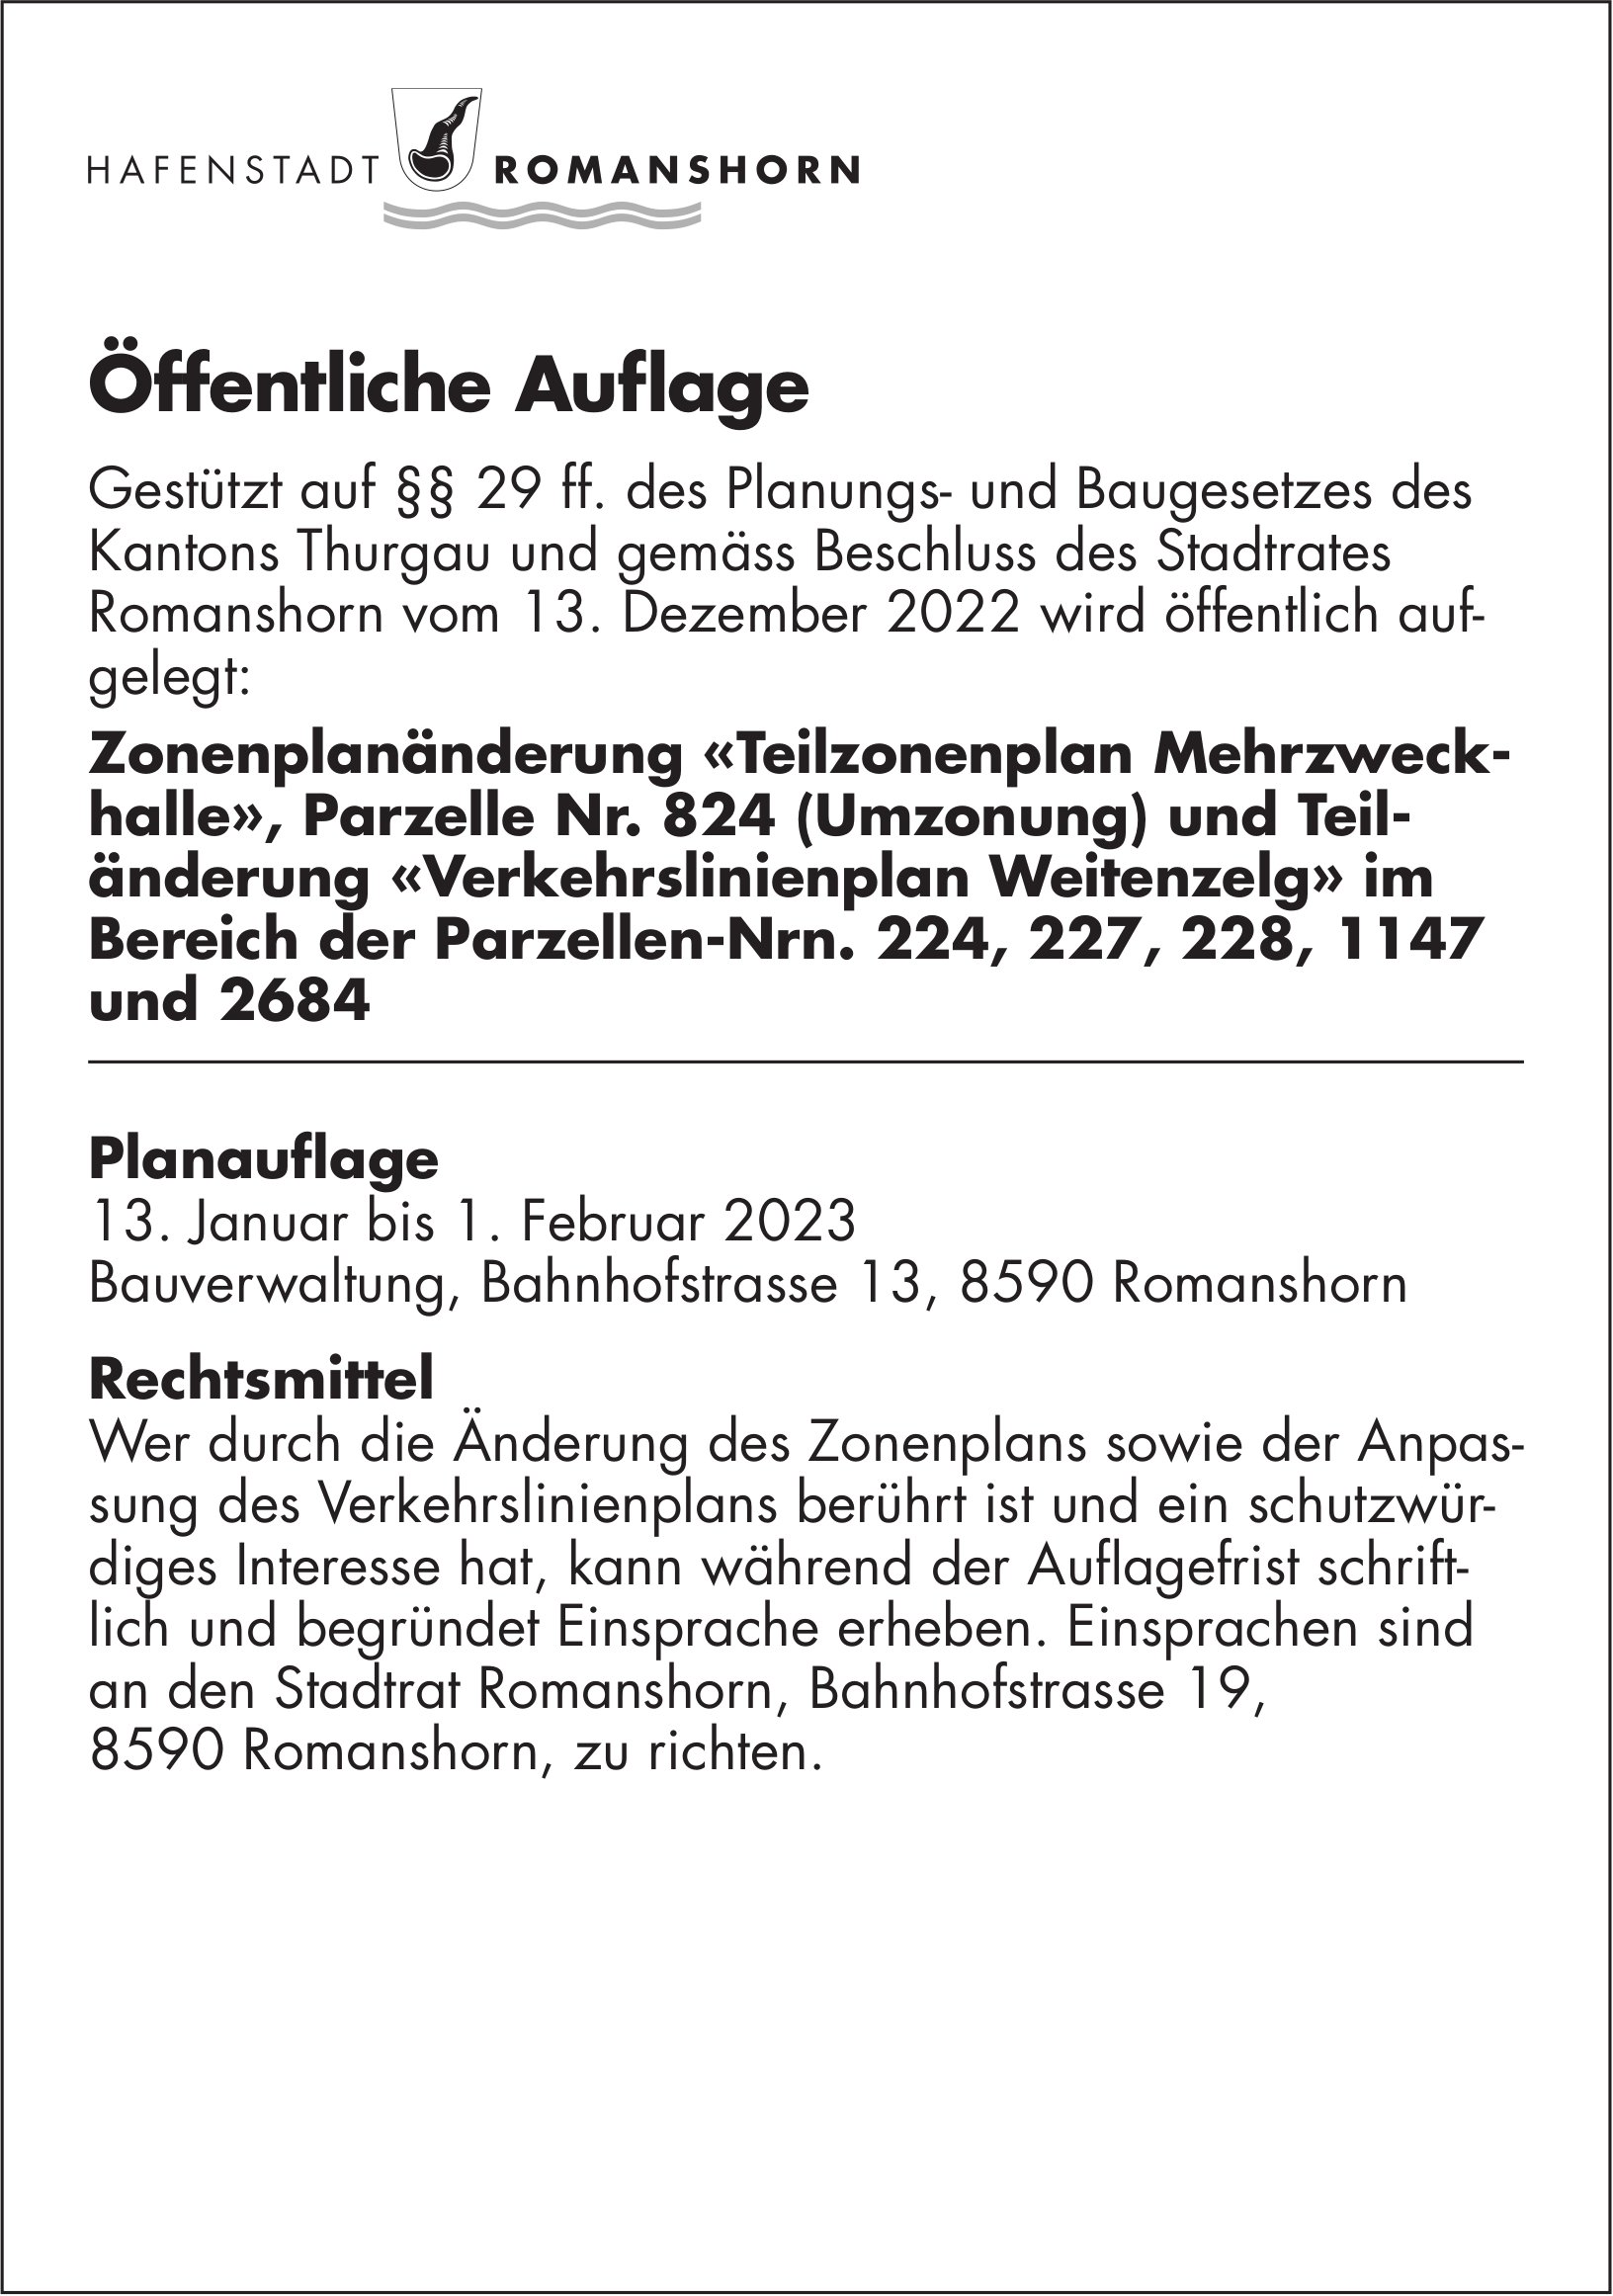 Hafenstadt Romanshorn, Öffentliche Auflage vom 13. Januar 2023